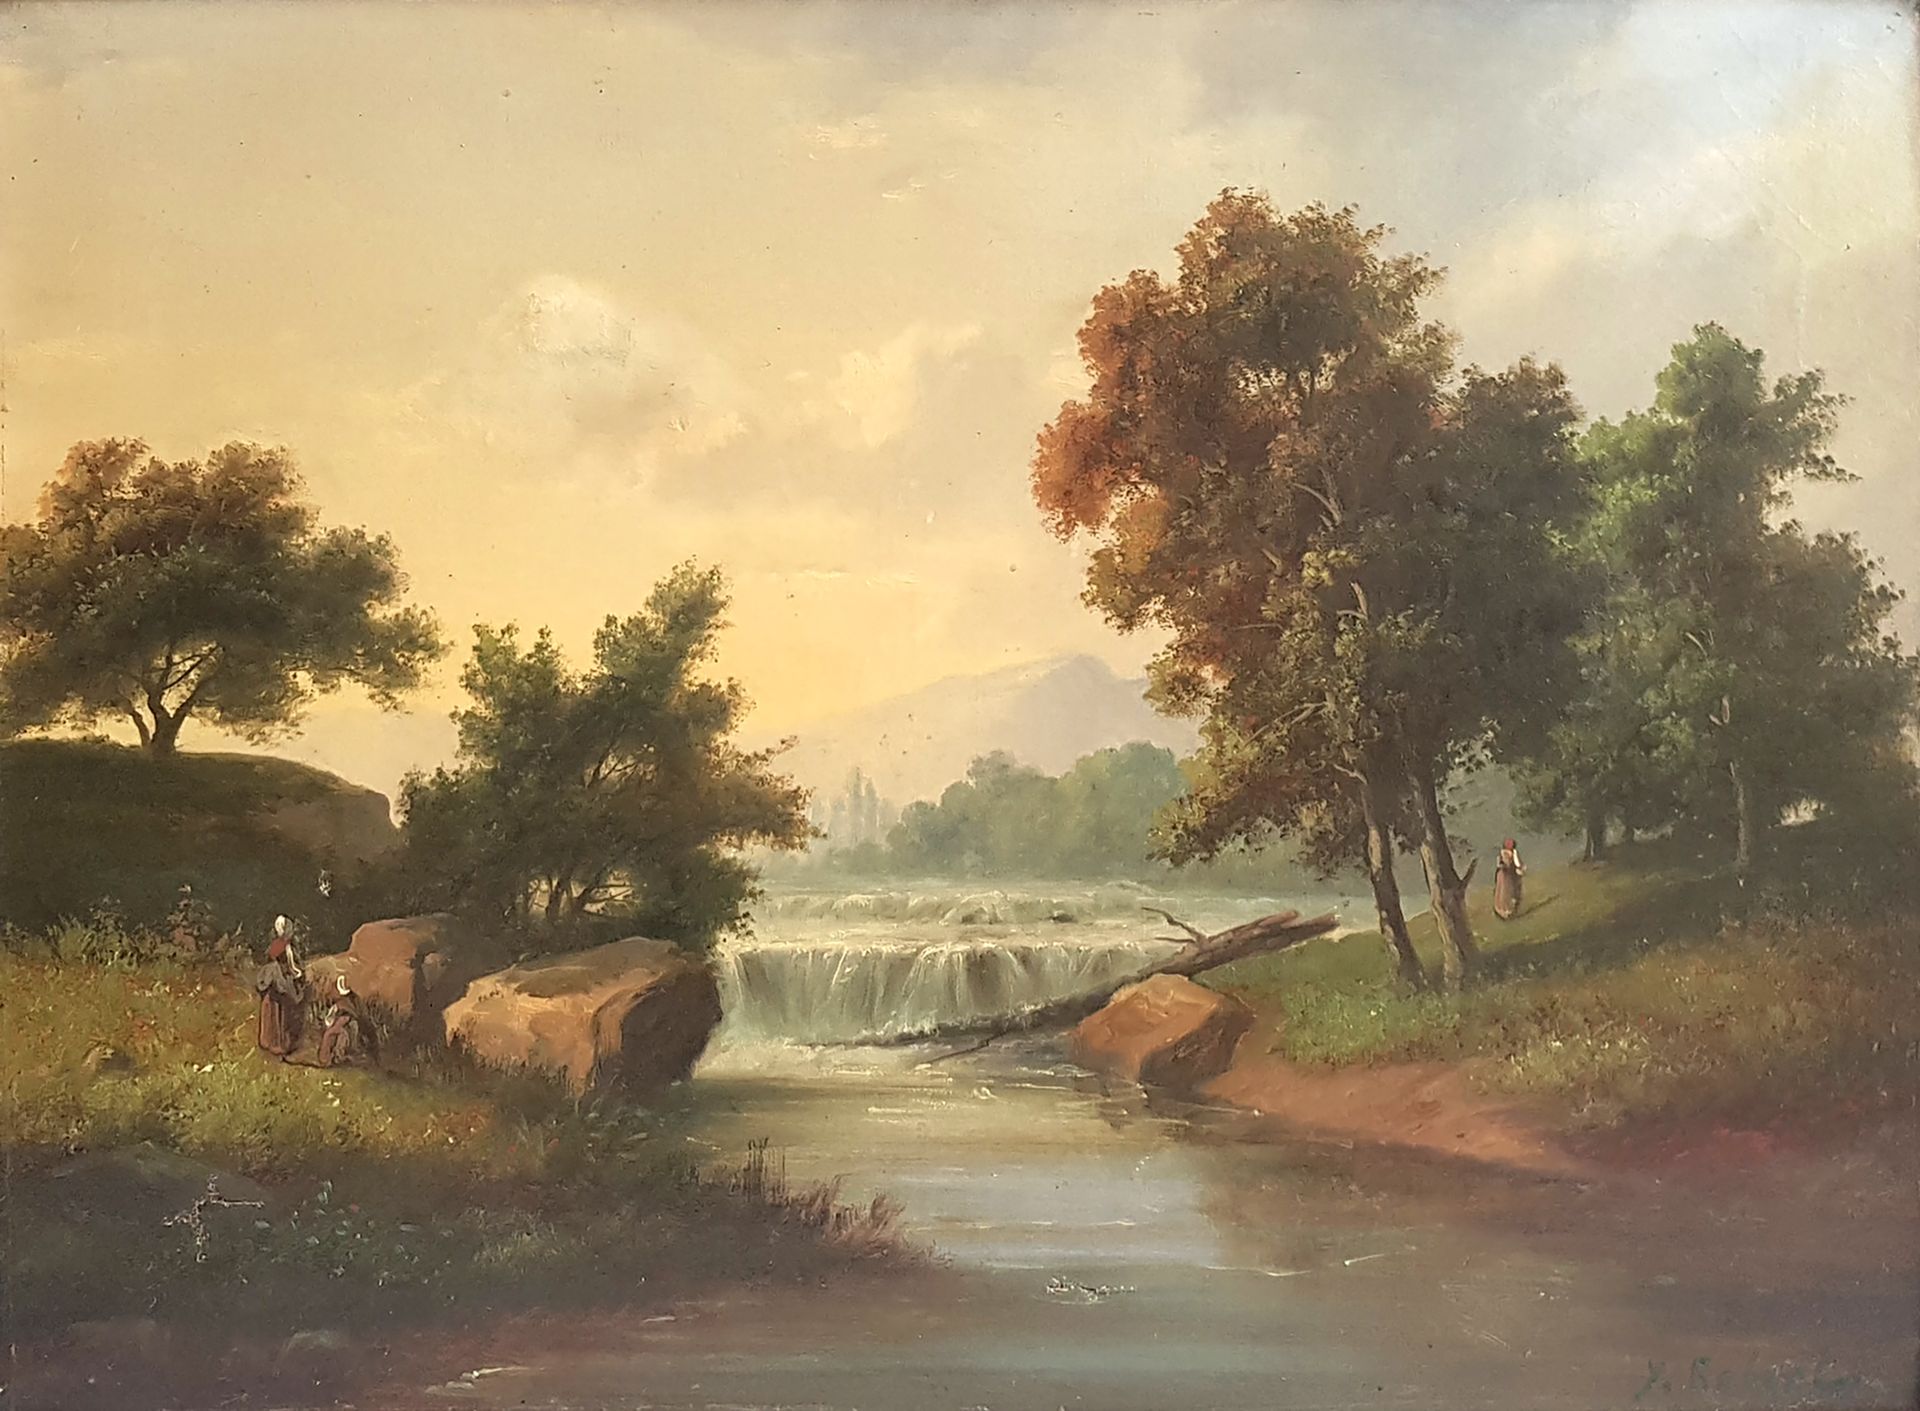 Null Y.ROBERT（20世纪的学校

景观与溪流

签名的布面油画

48,5 x 65 cm

事故和修复

有框